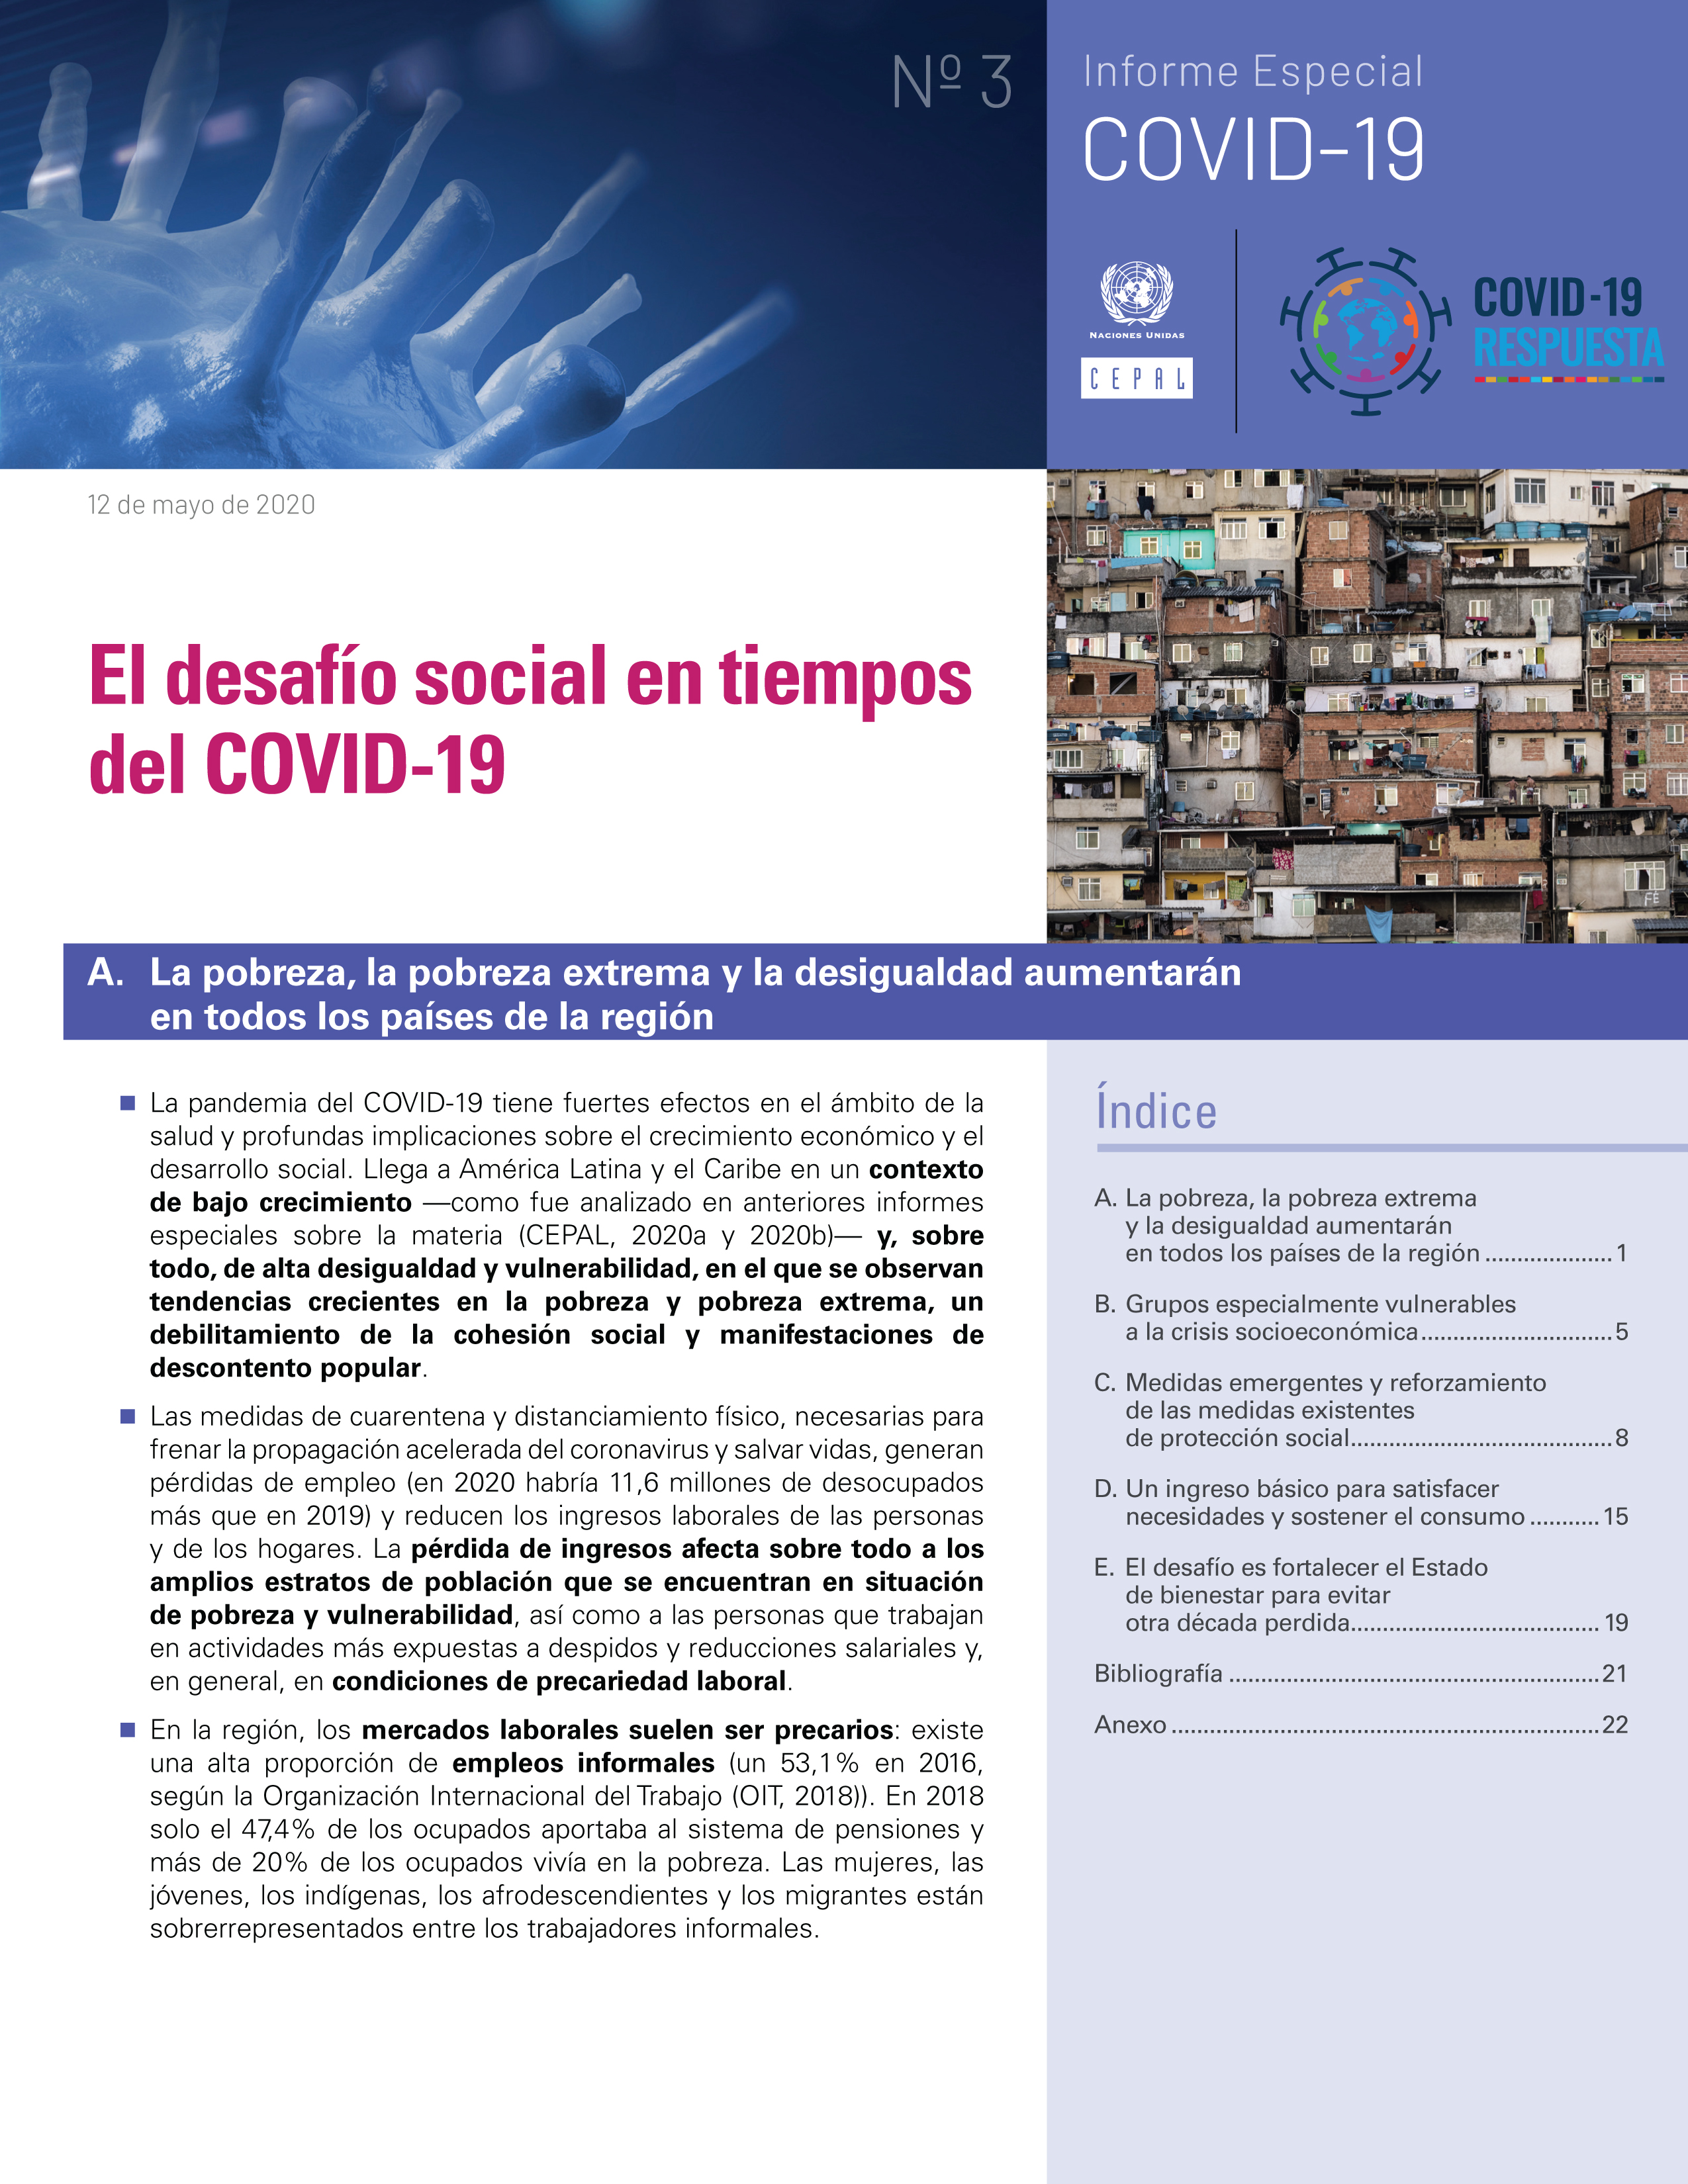 image of El desafío social en tiempos del COVID-19